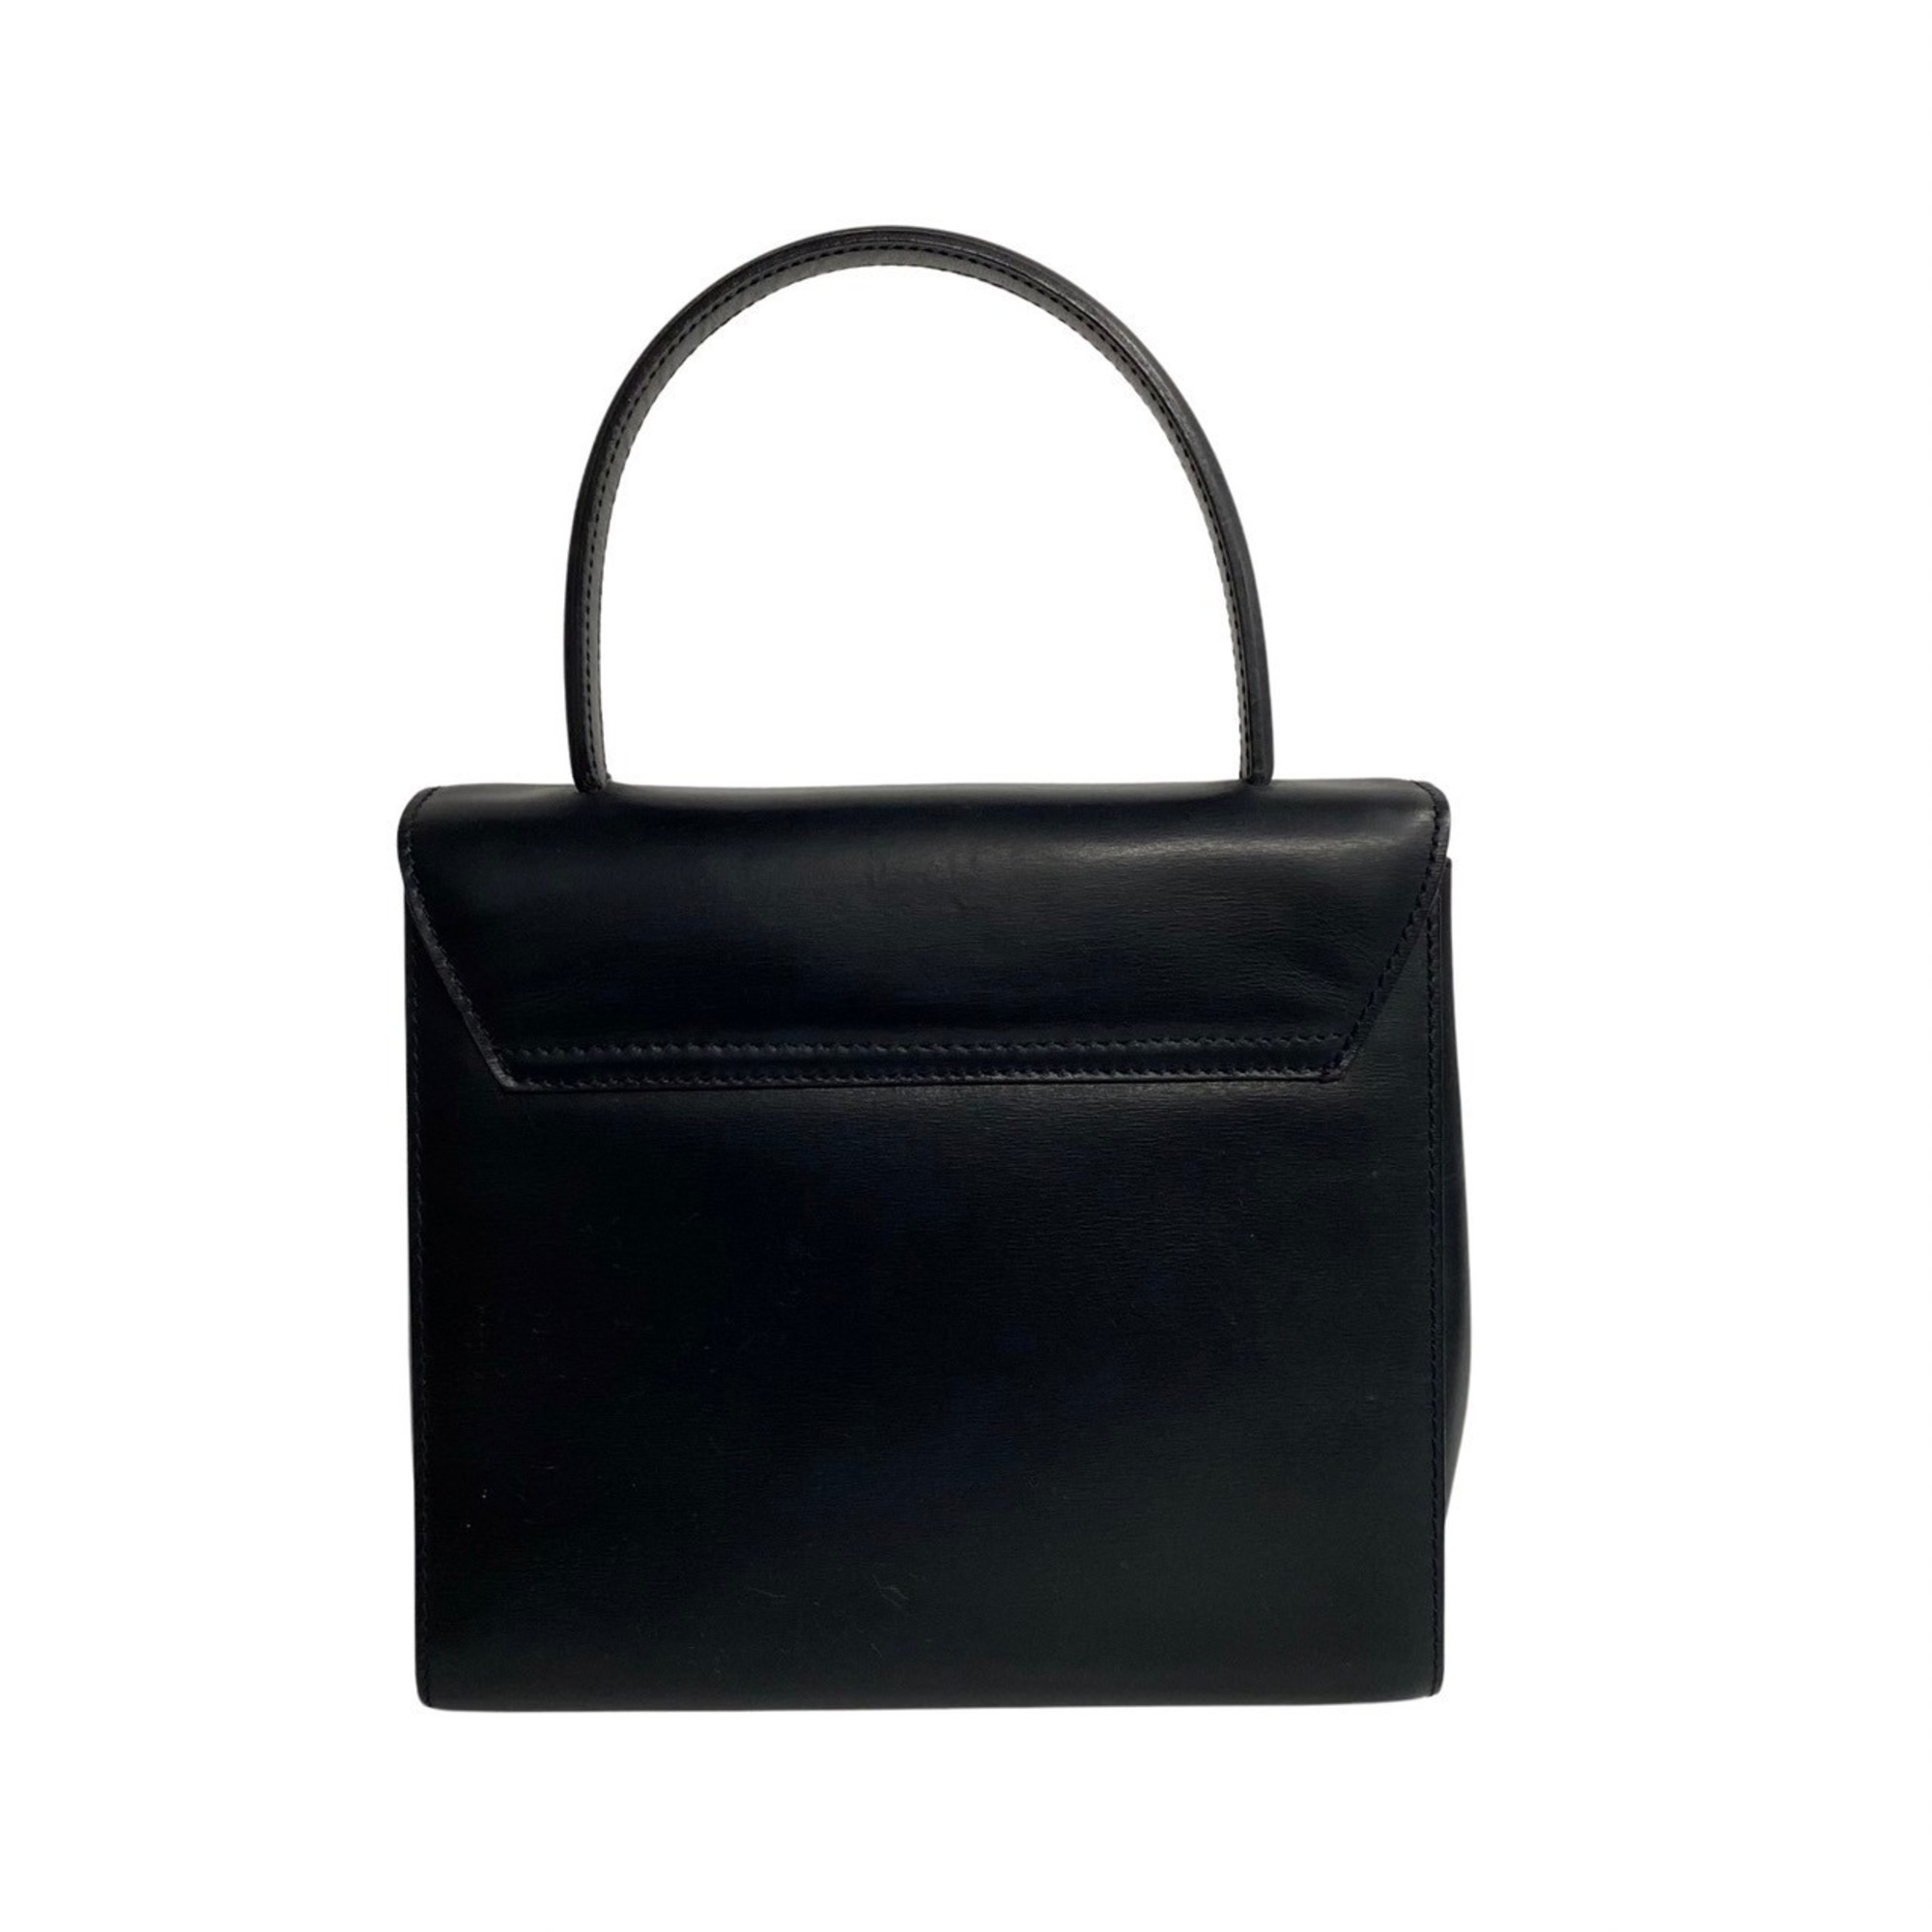 CELINE Star Ball Leather 2way Handbag Shoulder Bag Black Red Lining 51431